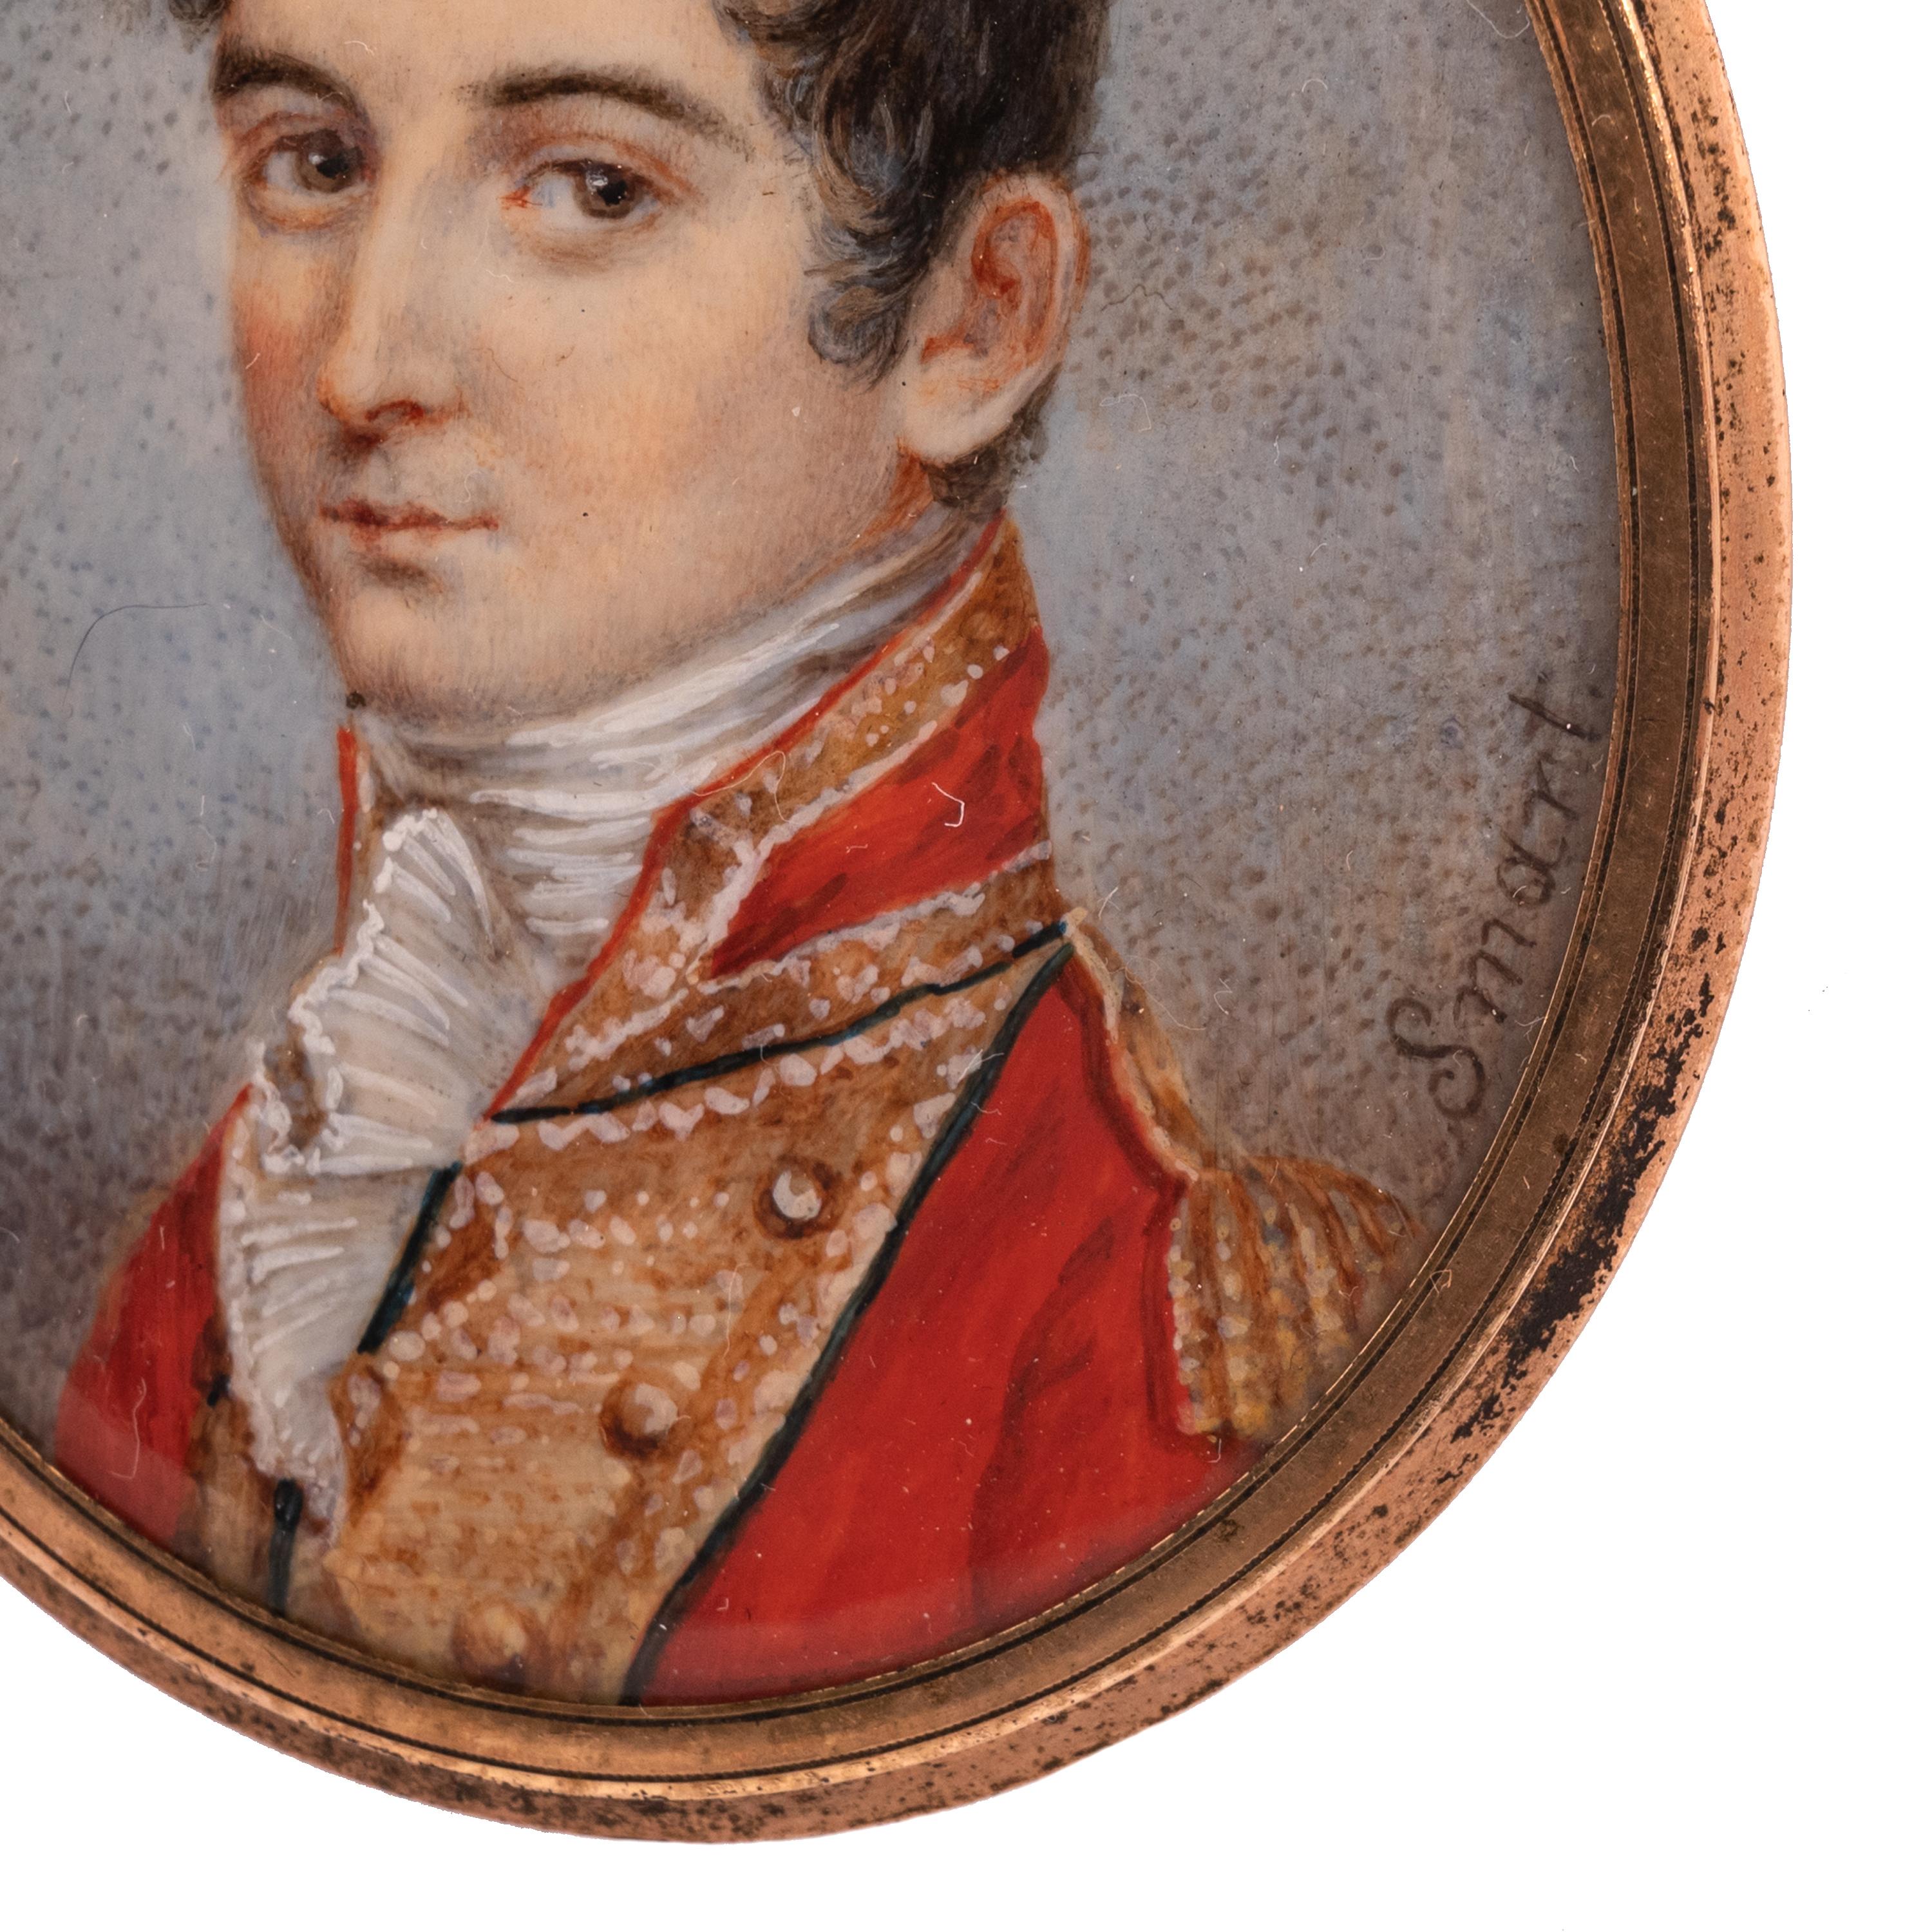 Une belle peinture ancienne de portrait miniature, John Smart (1741-1811). Le tableau date d'environ 1780.
Très beau portrait miniature d'un jeune officier militaire, peint sur une galette d'ivoire et signé 